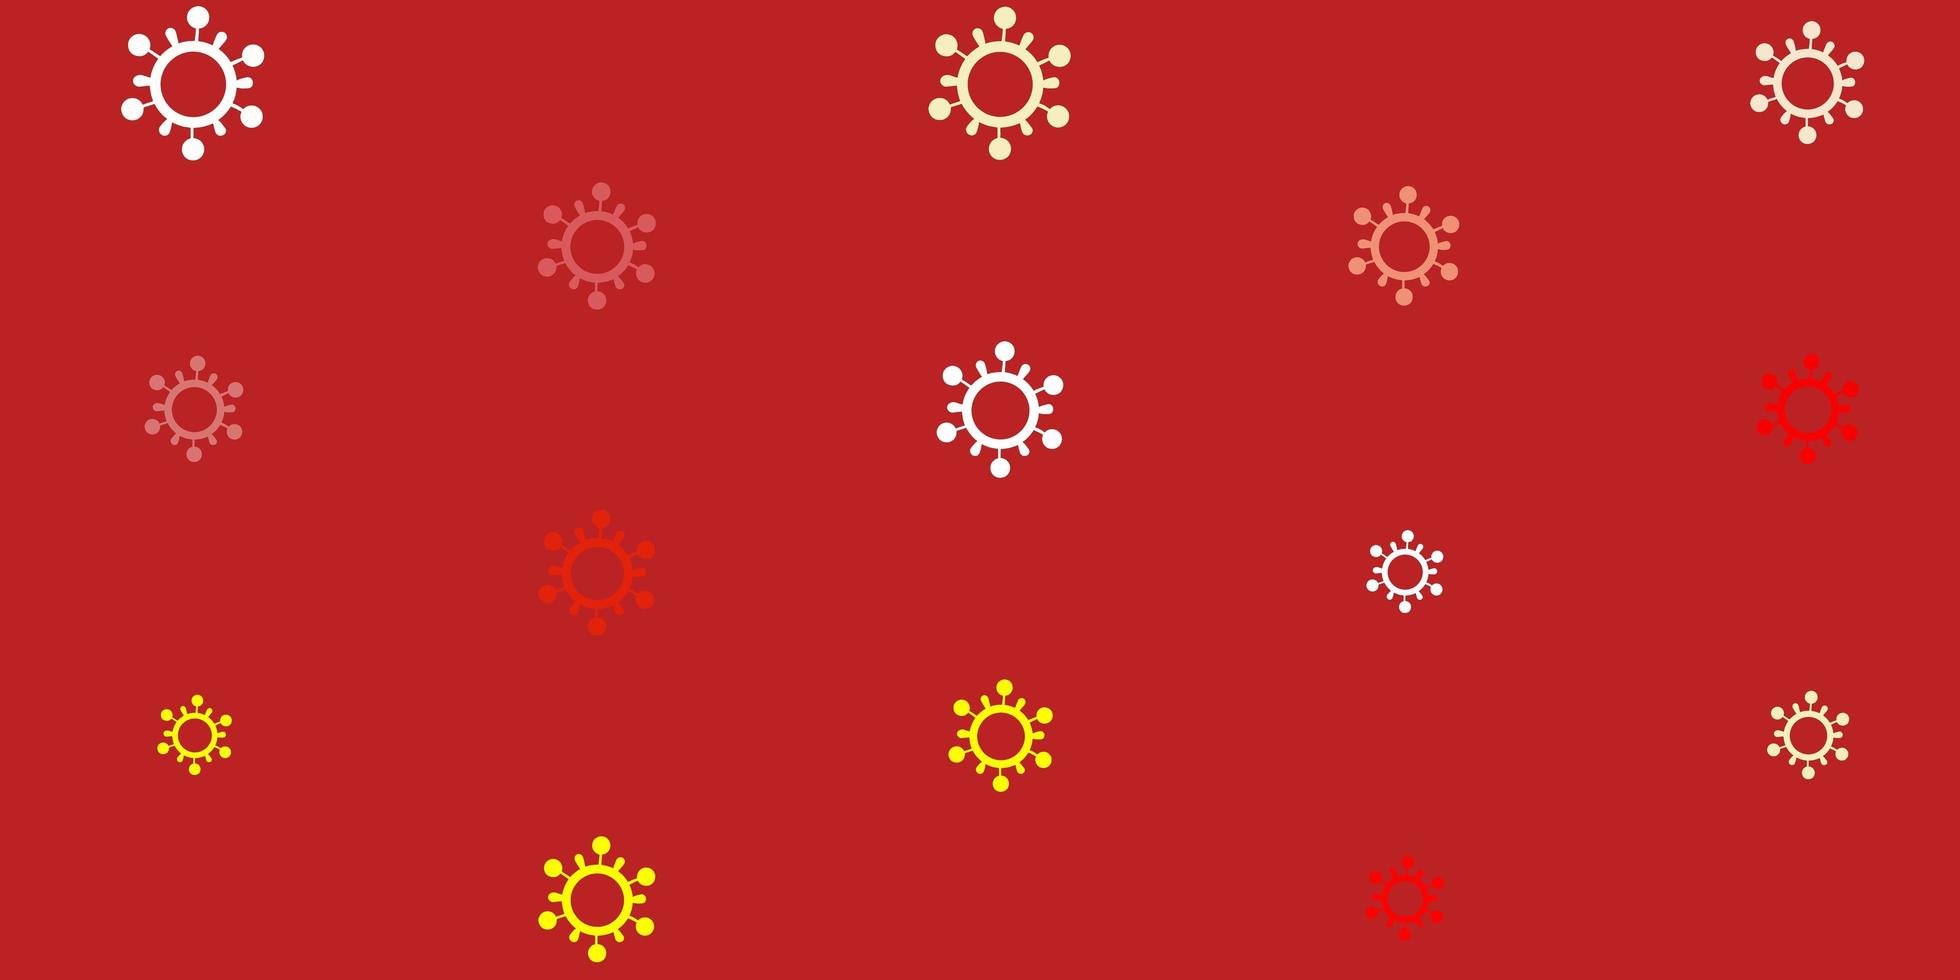 ljus orange vektor bakgrund med virussymboler